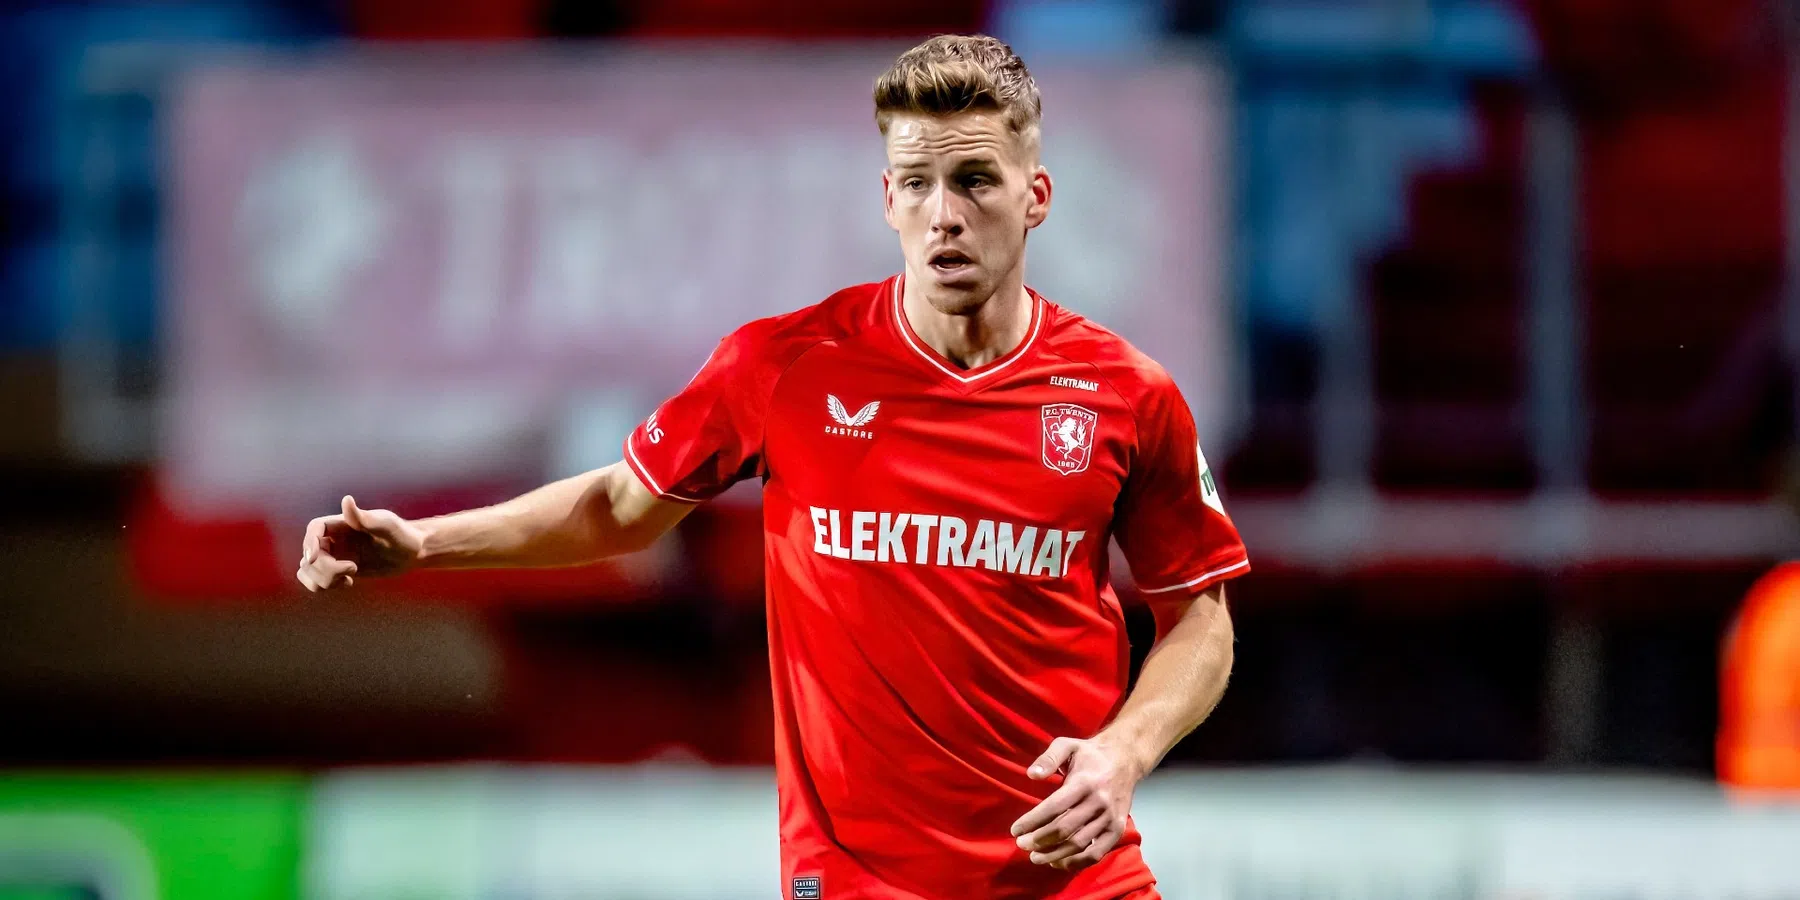 Wie is Gijs Smal, de Twente-back die komende zomer naar Feyenoord kan verkassen?